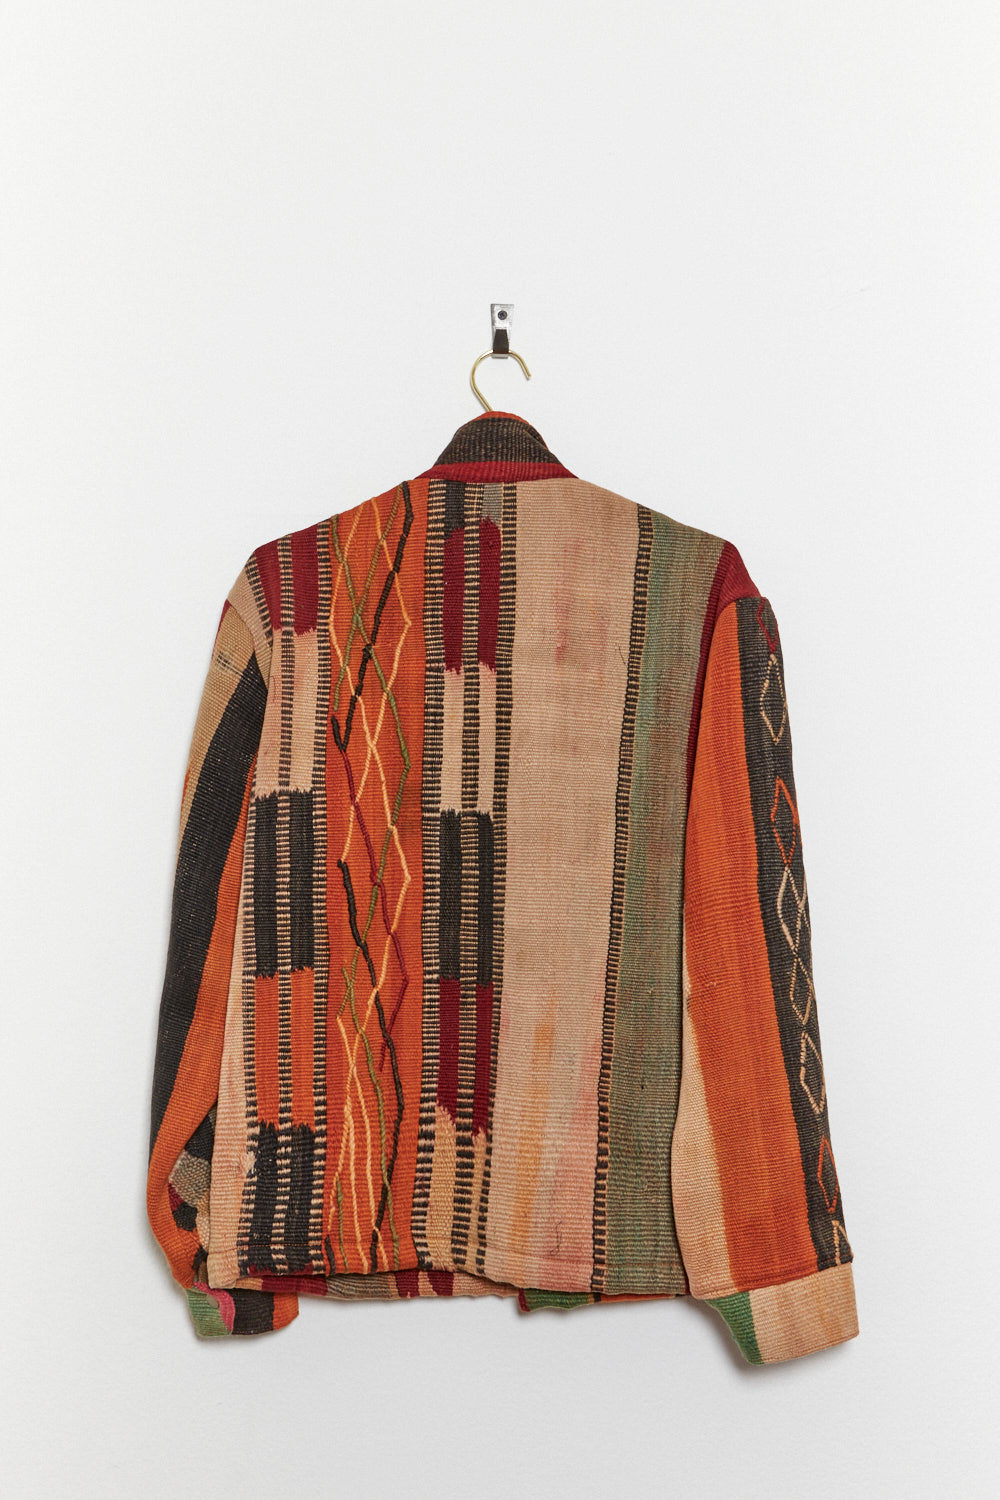 Afghan Kilim Chore Coat - Size Medium